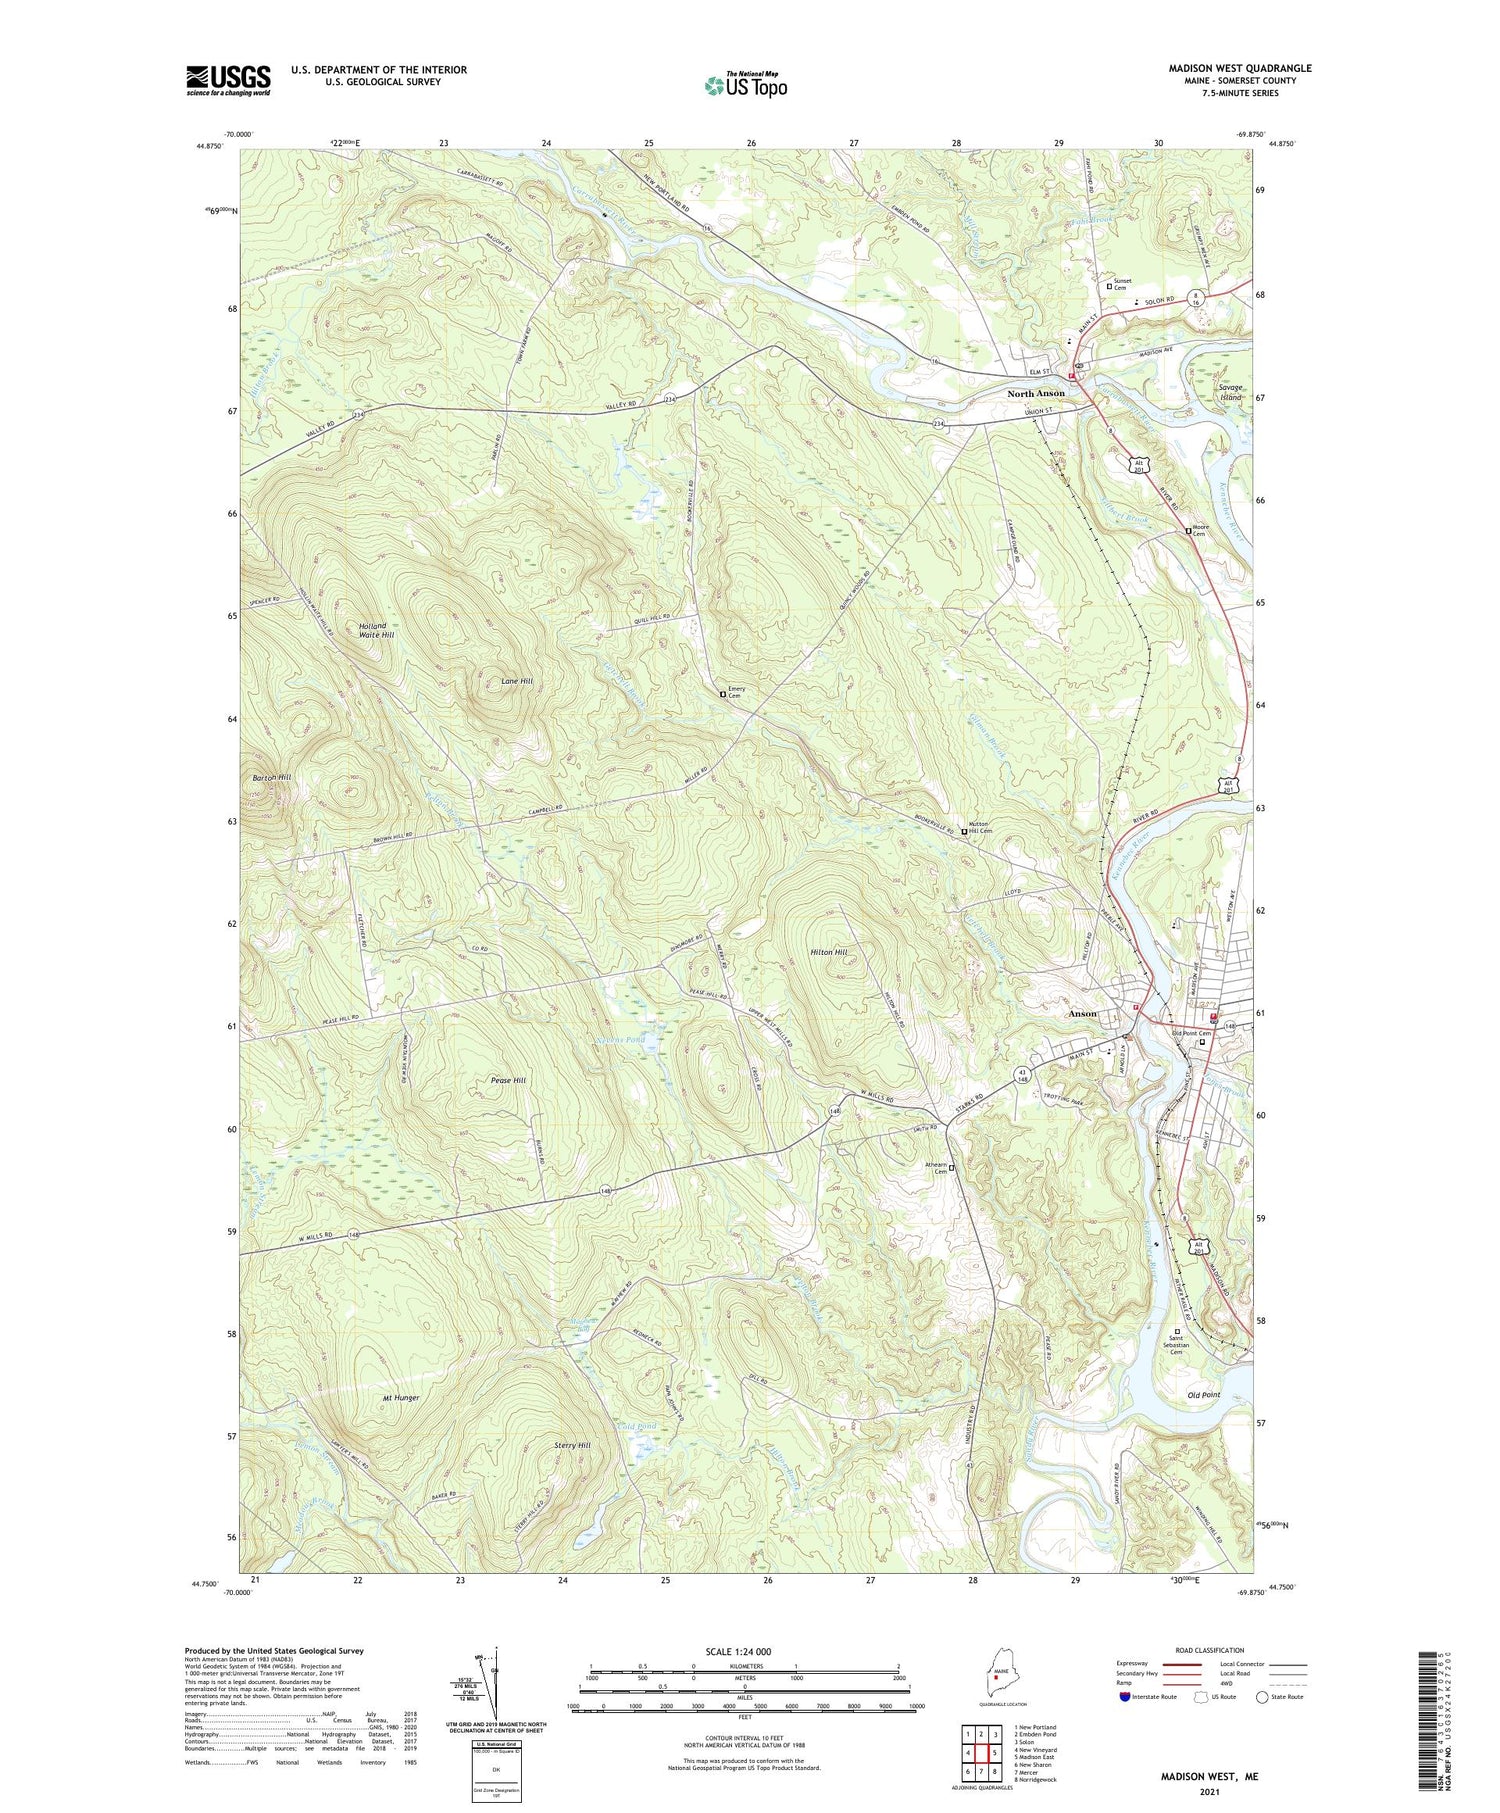 Madison West Maine US Topo Map Image